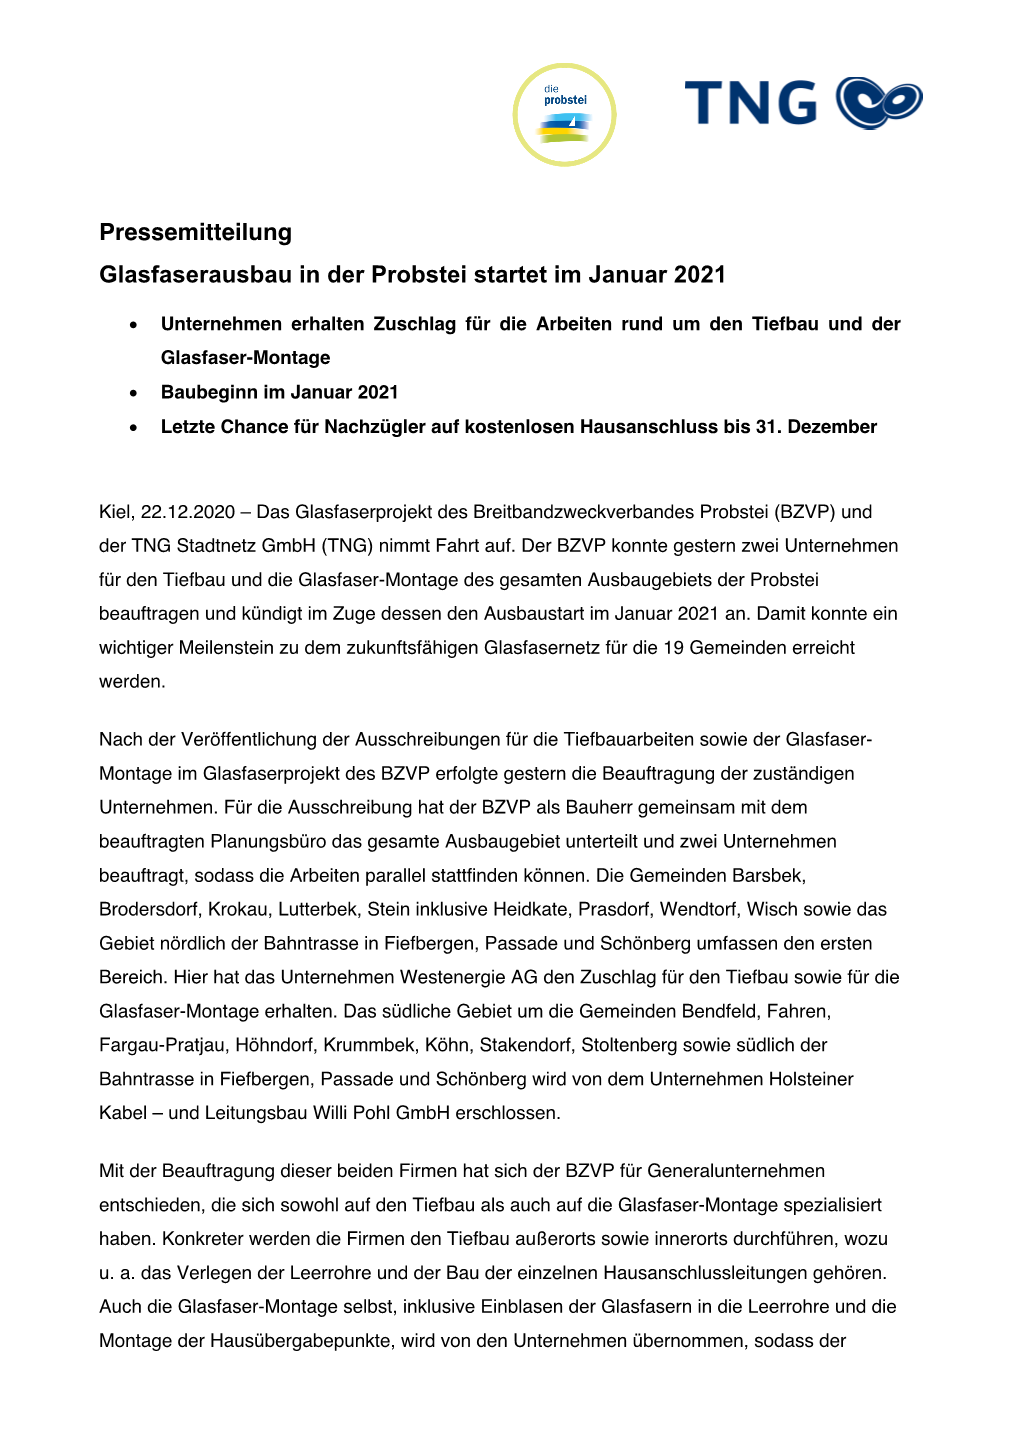 Pressemitteilung Glasfaserausbau in Der Probstei Startet Im Januar 2021